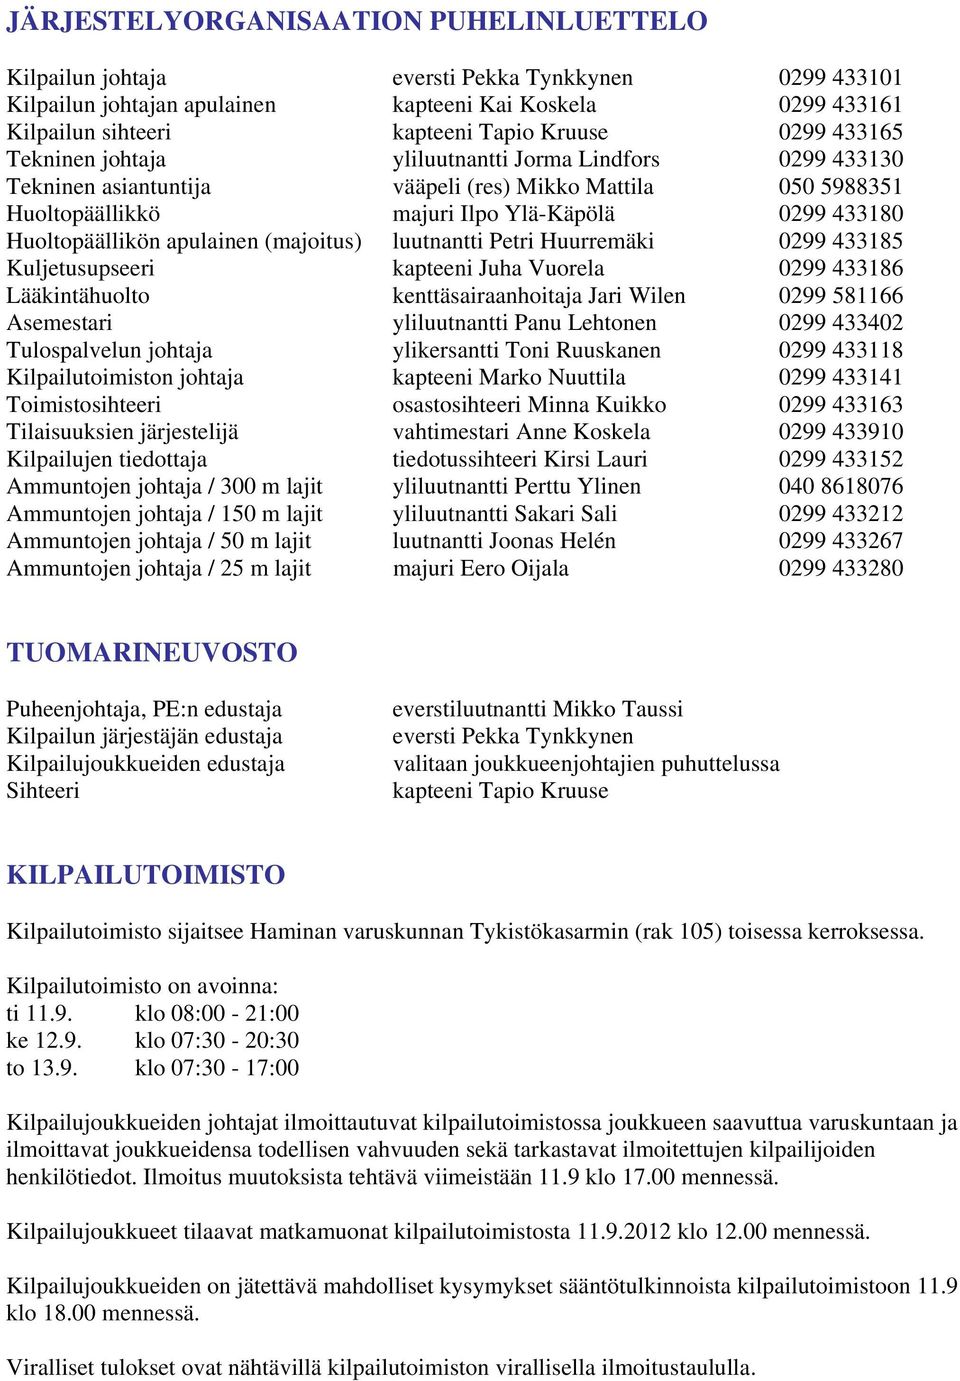 apulainen (majoitus) luutnantti Petri Huurremäki 0299 433185 Kuljetusupseeri kapteeni Juha Vuorela 0299 433186 Lääkintähuolto kenttäsairaanhoitaja Jari Wilen 0299 581166 Asemestari yliluutnantti Panu